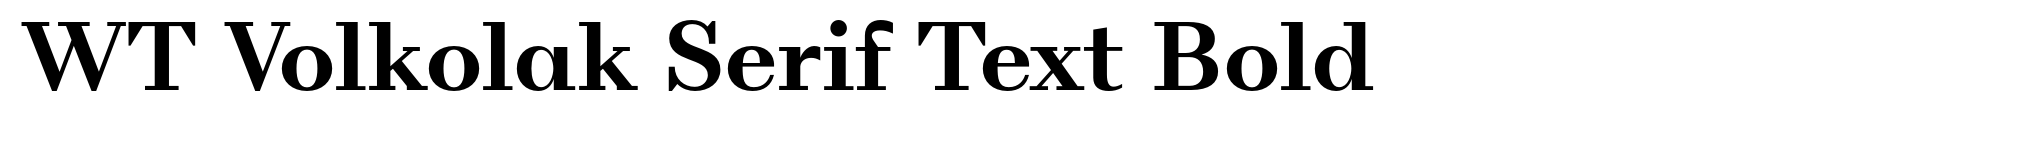 WT Volkolak Serif Text Bold image